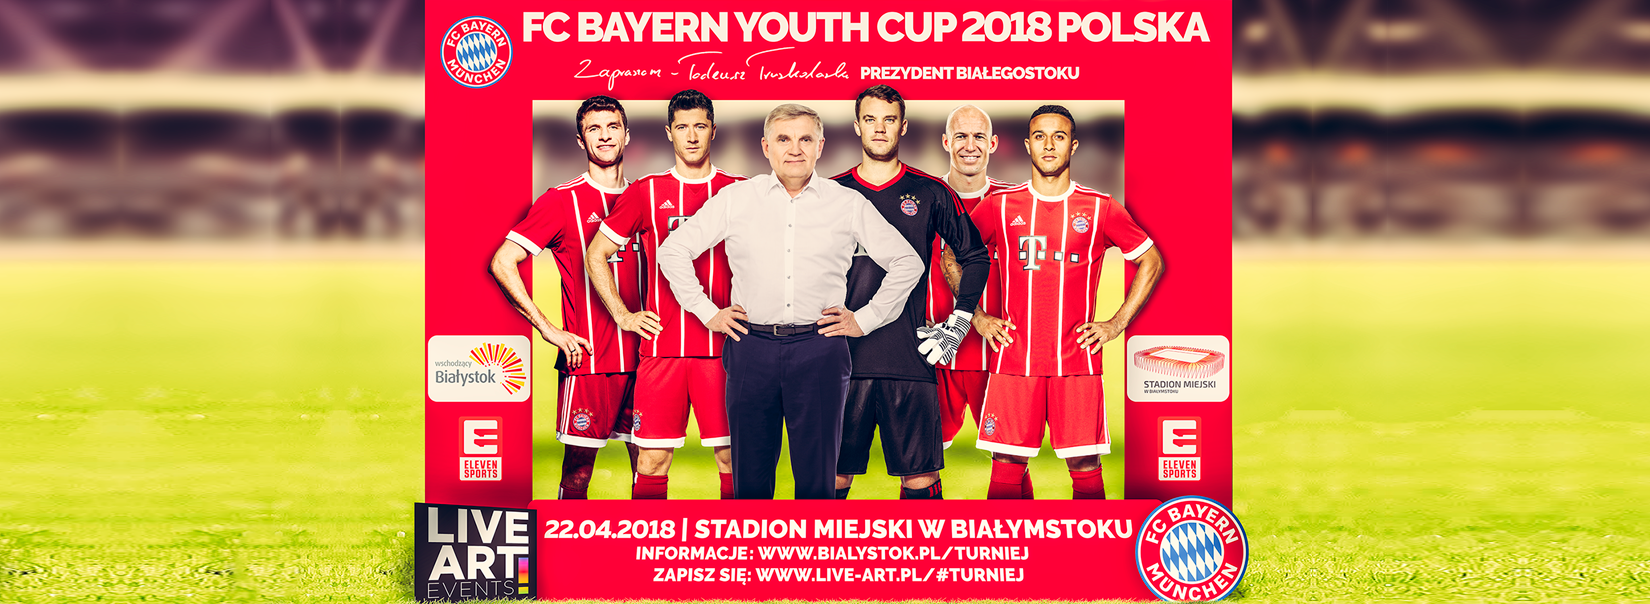 FC Bayern Youth Cup 2018 Polska